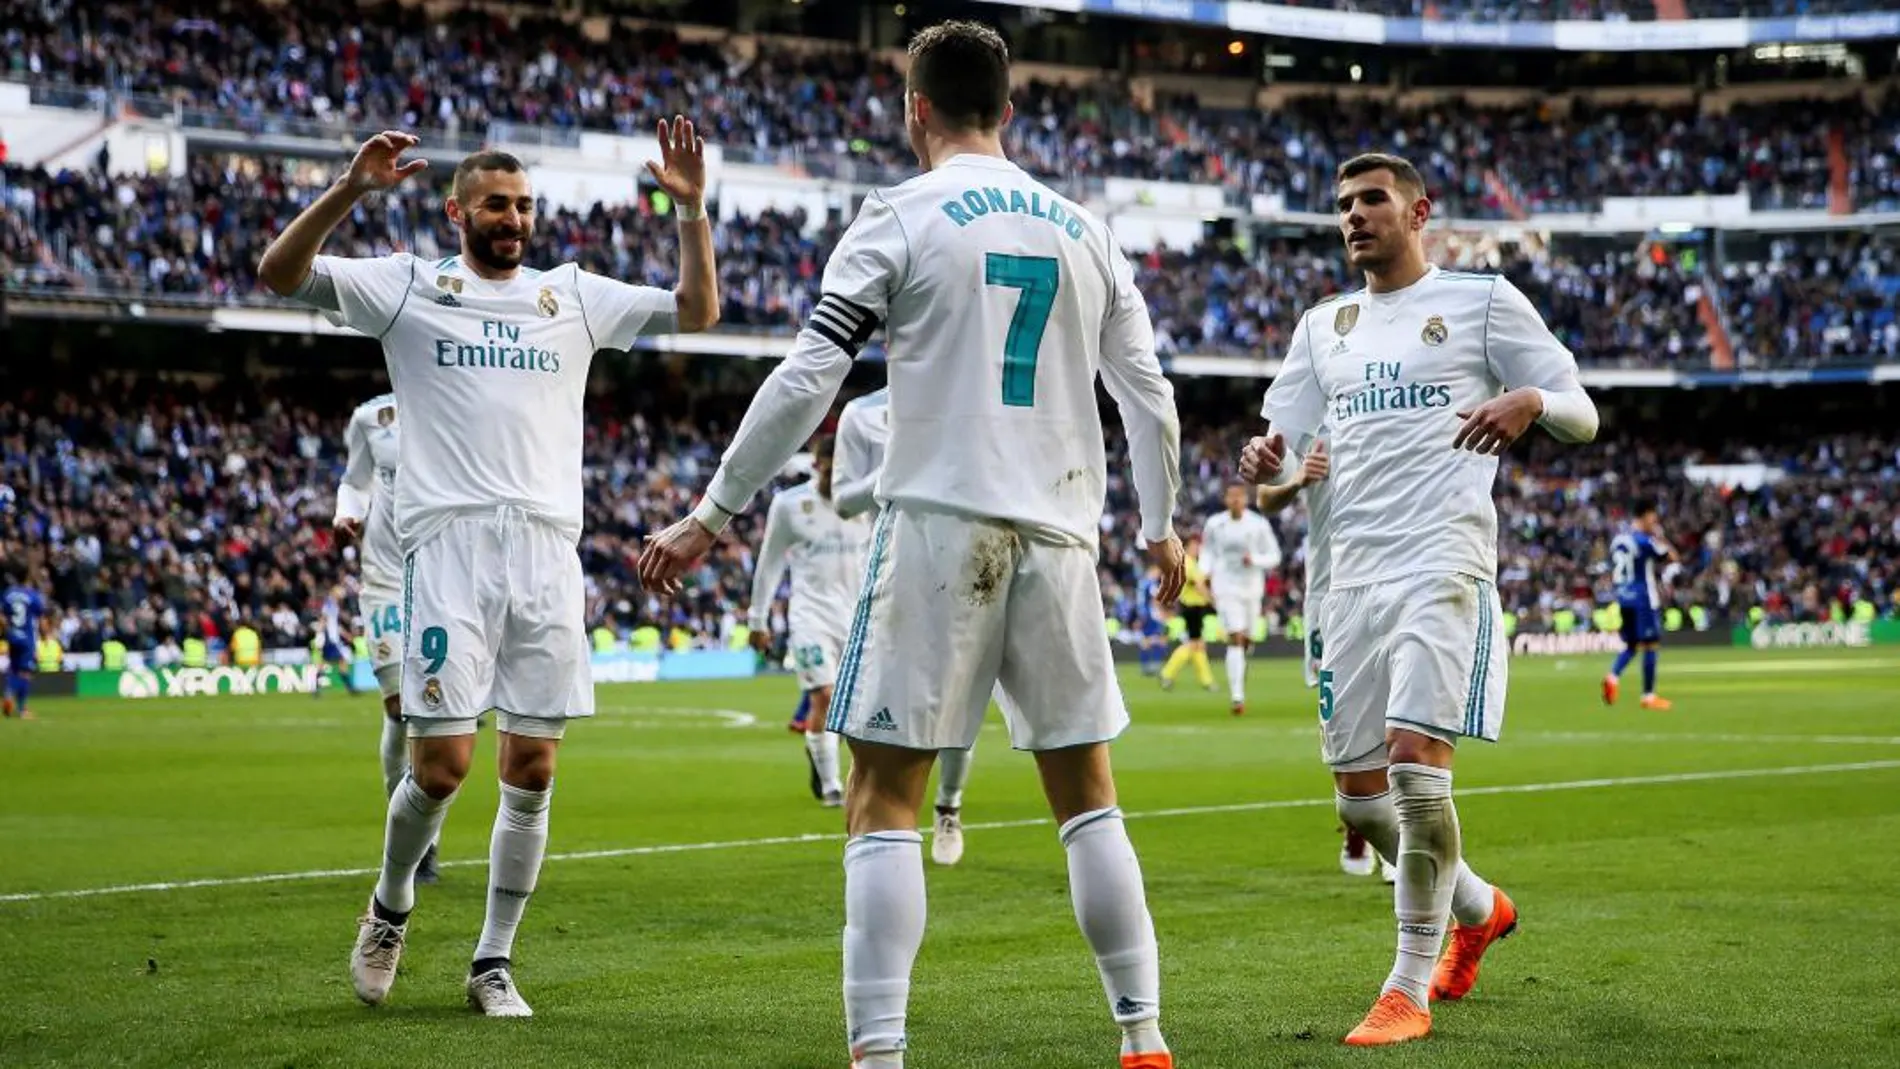 El delantero portugués del Real Madrid Cristiano Ronaldo (c), festeja su gol durante el partido contra el Deportivo Alavés